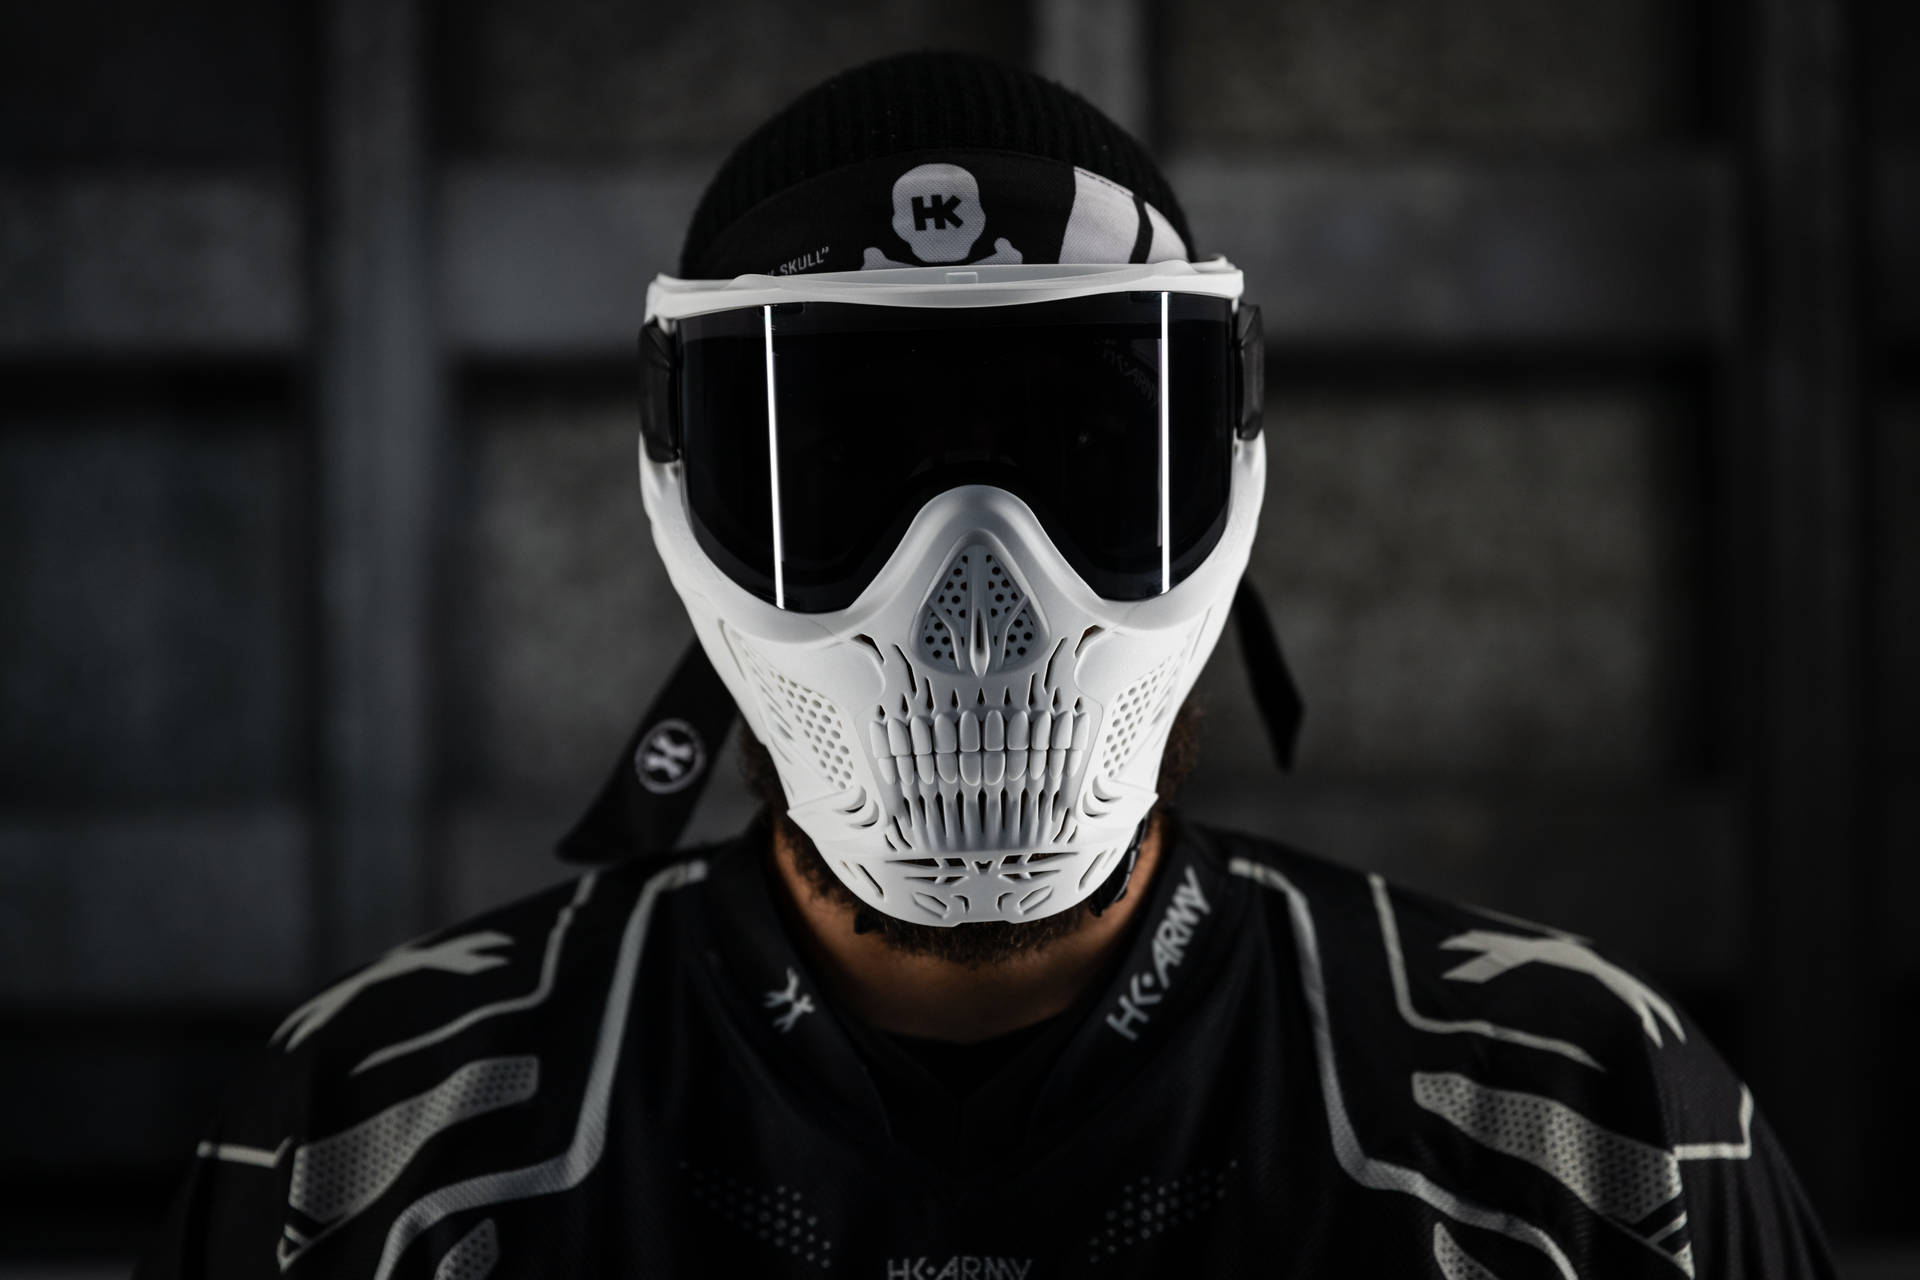 Scary Skull Design On Helmet Background